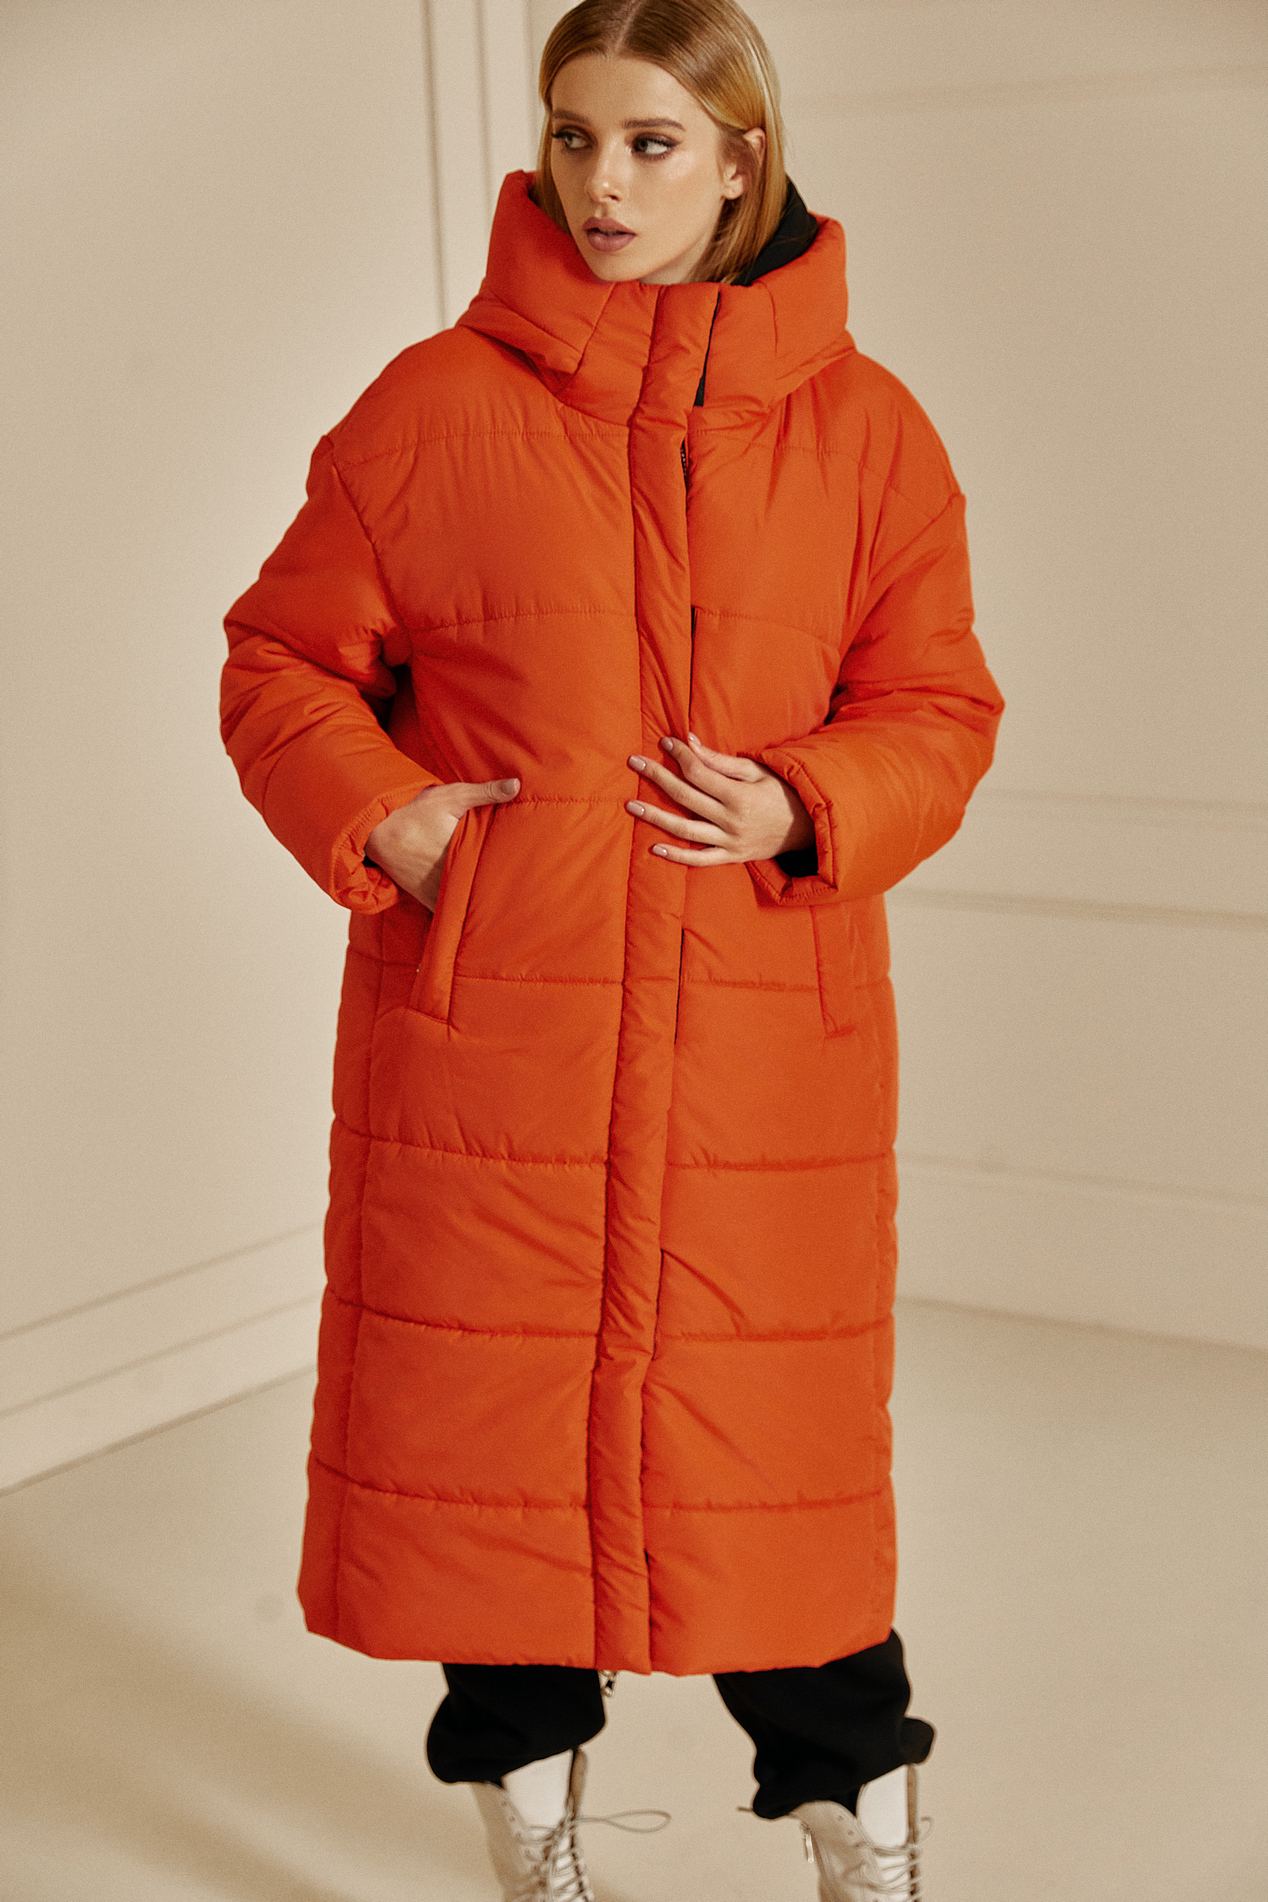 модный пуховик зима 2021 2022 украинский бренд неоновый яркий оранжевый длинный